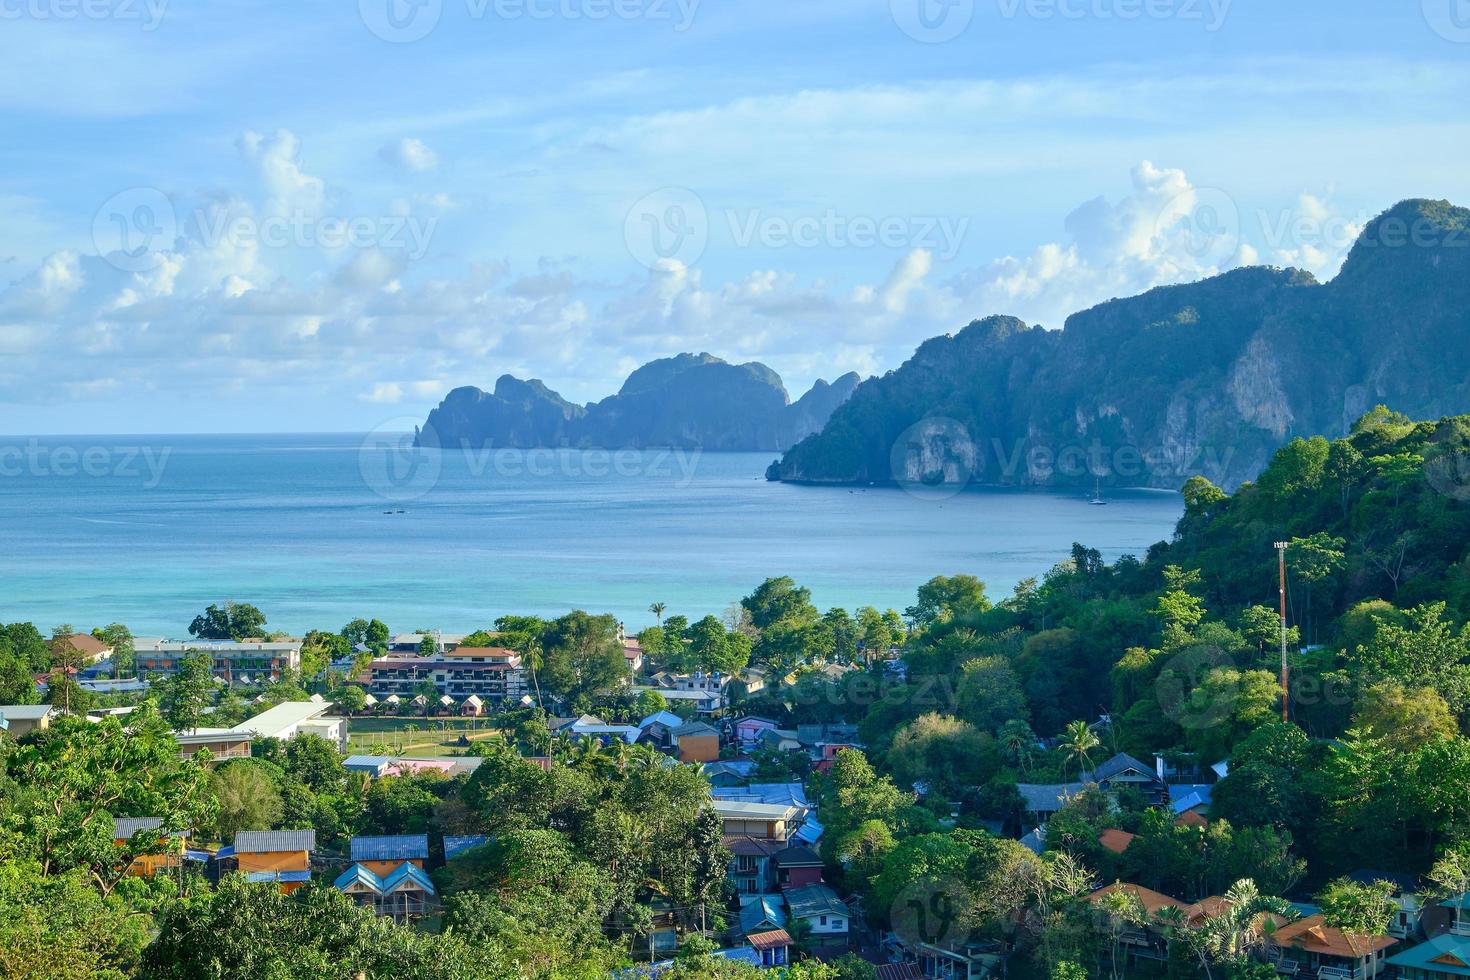 vue panoramique depuis le point de vue en grand angle sur l'île de phi phi, de beaux endroits touristiques comme le paradis surplombant les maisons des hôtels et des stations balnéaires à la côte et au ciel bleu. photo